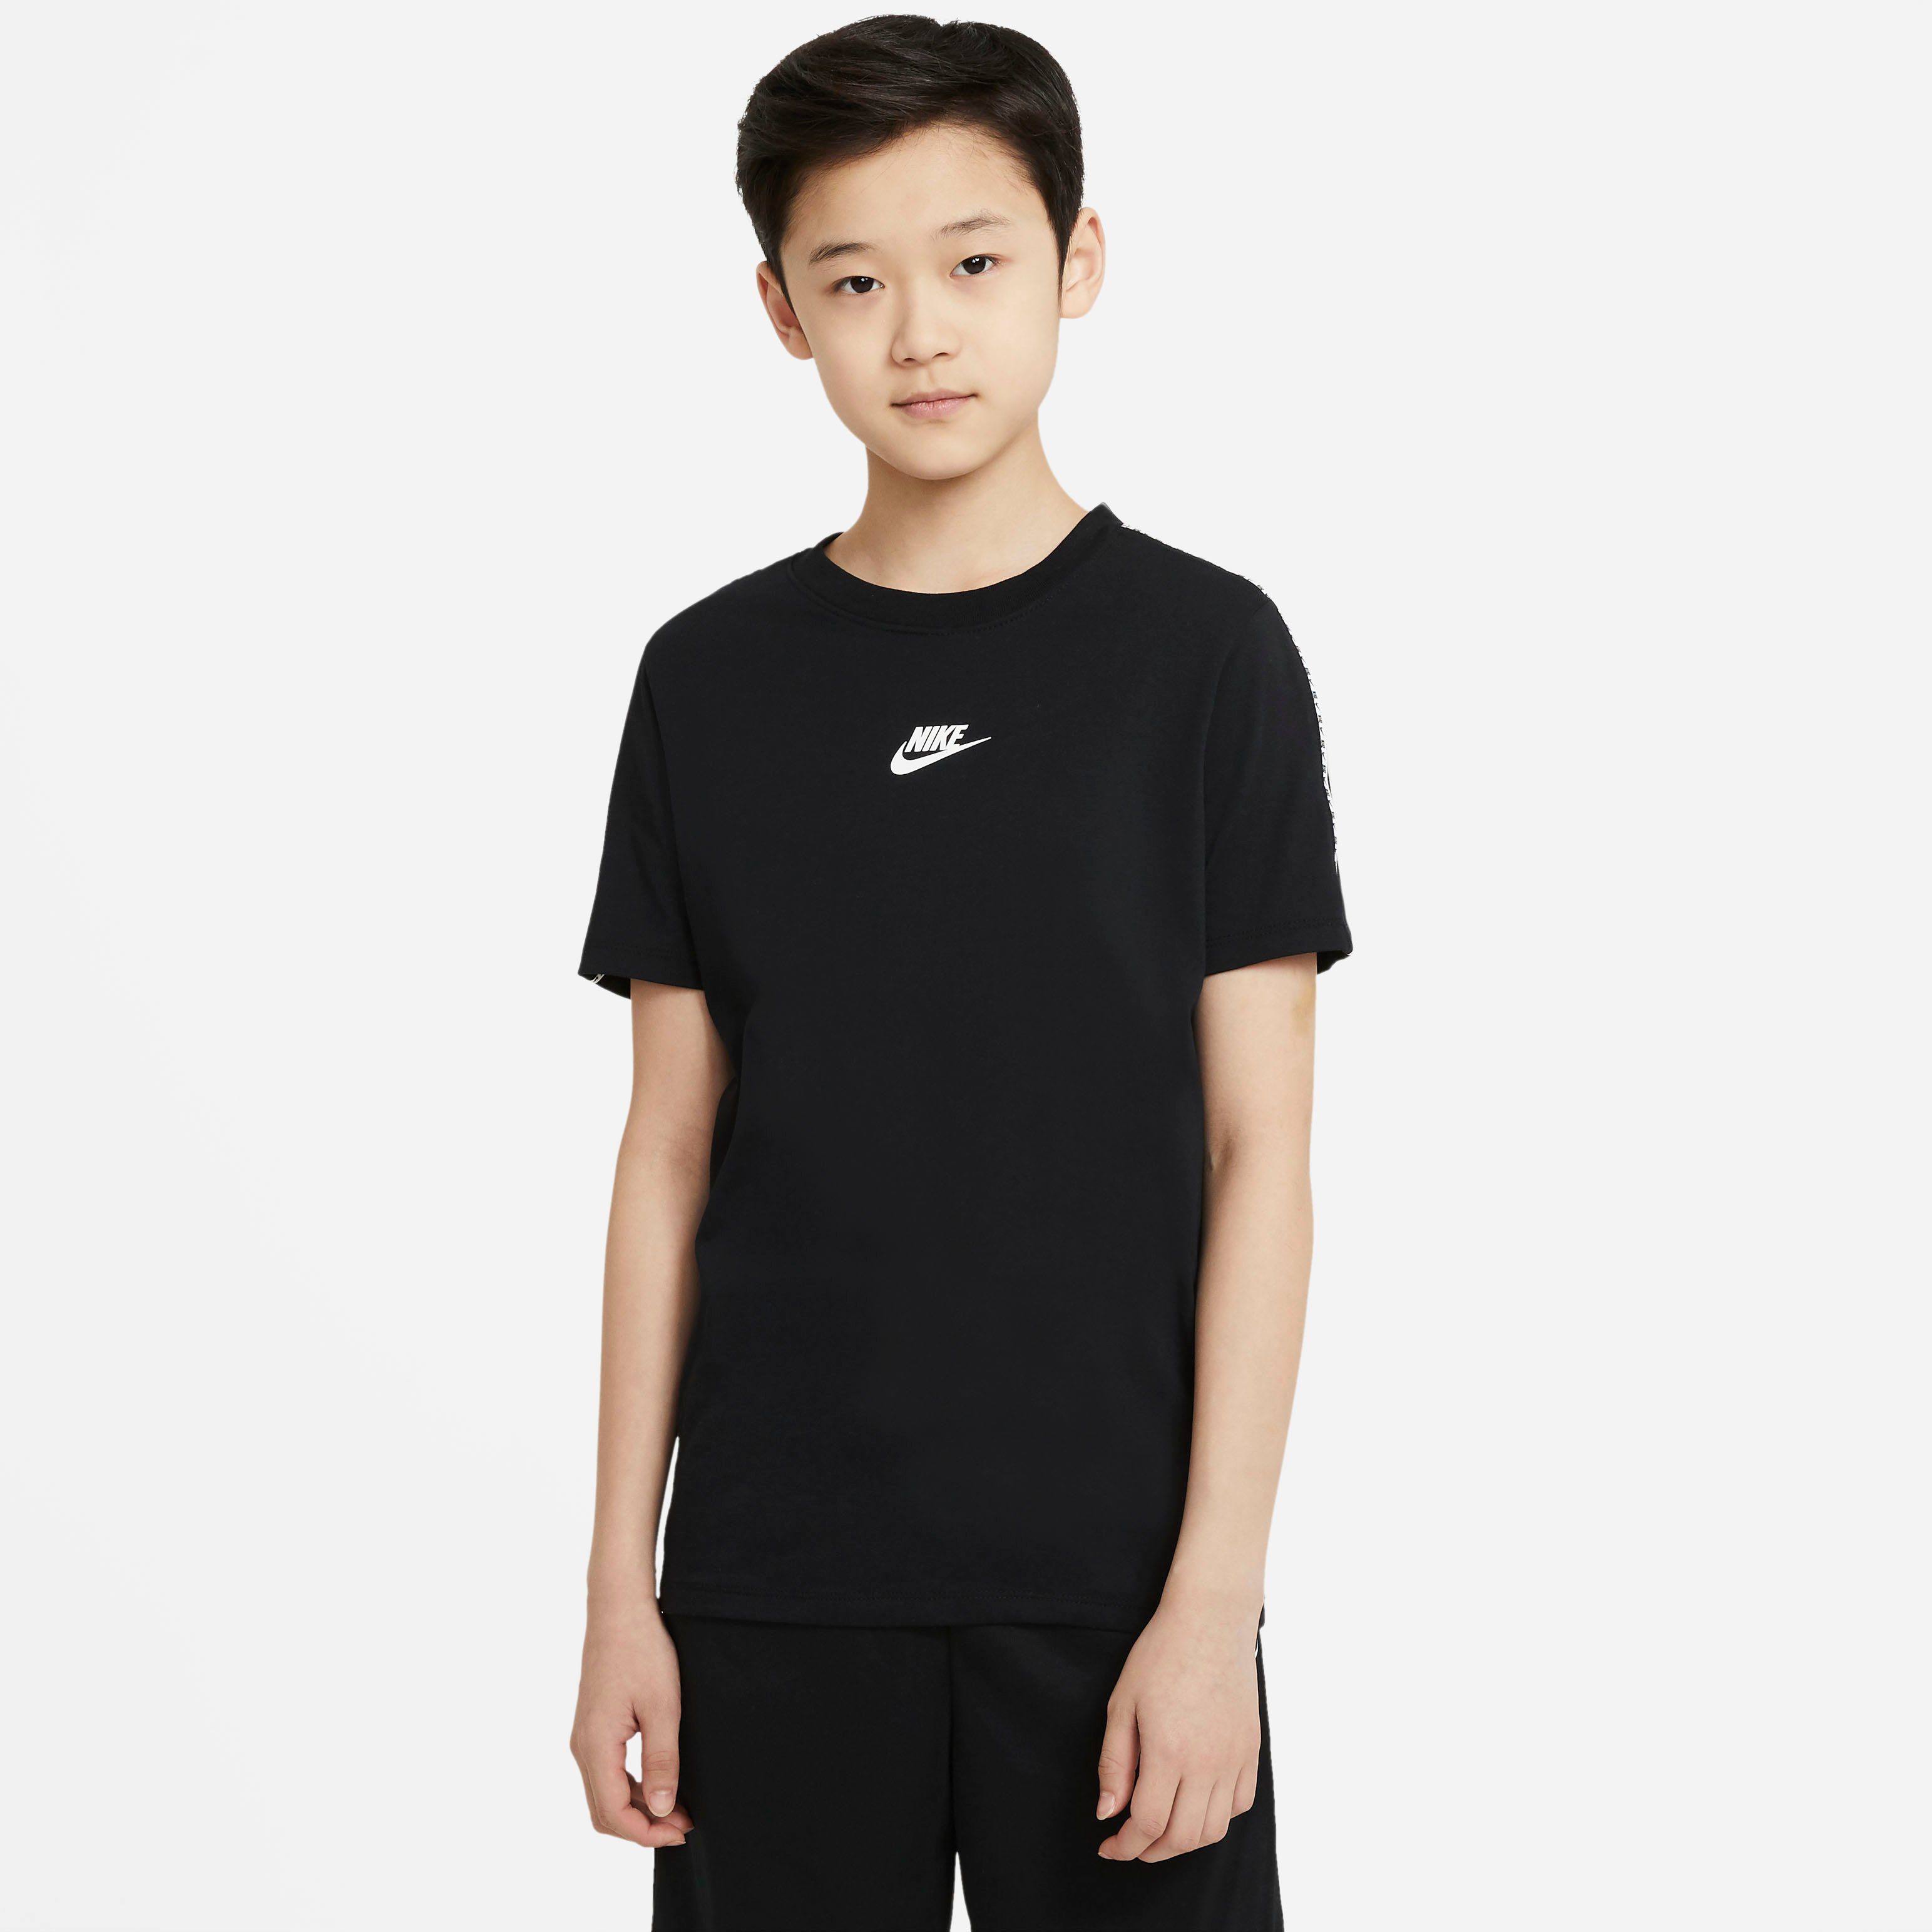 Nike Jungen T-Shirts online kaufen | OTTO